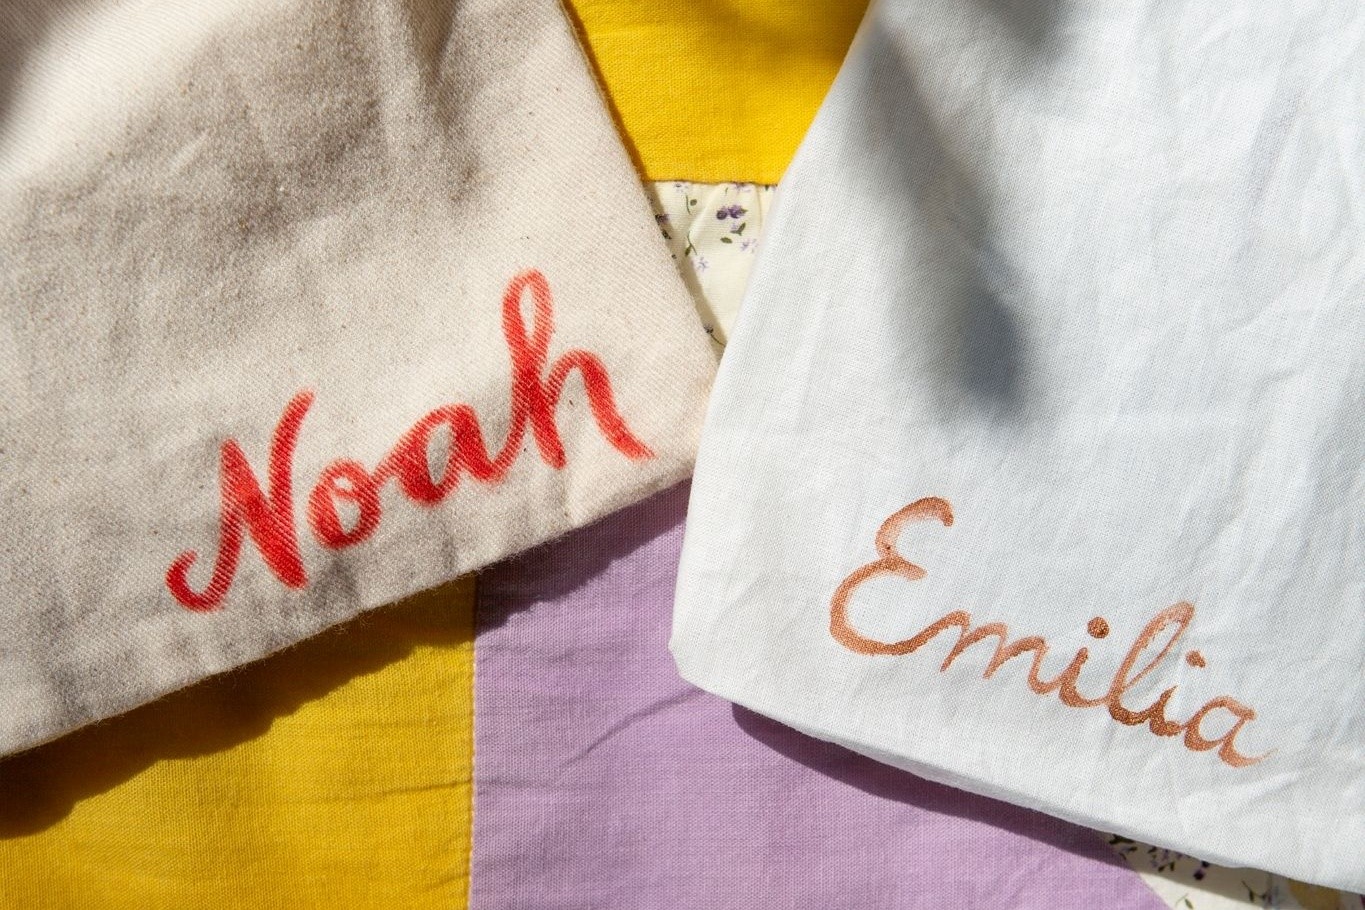 Emilia und Noah sind im vergangenen Jahr die häufigsten Erstnamen bei neugeborenen Babys gewesen.